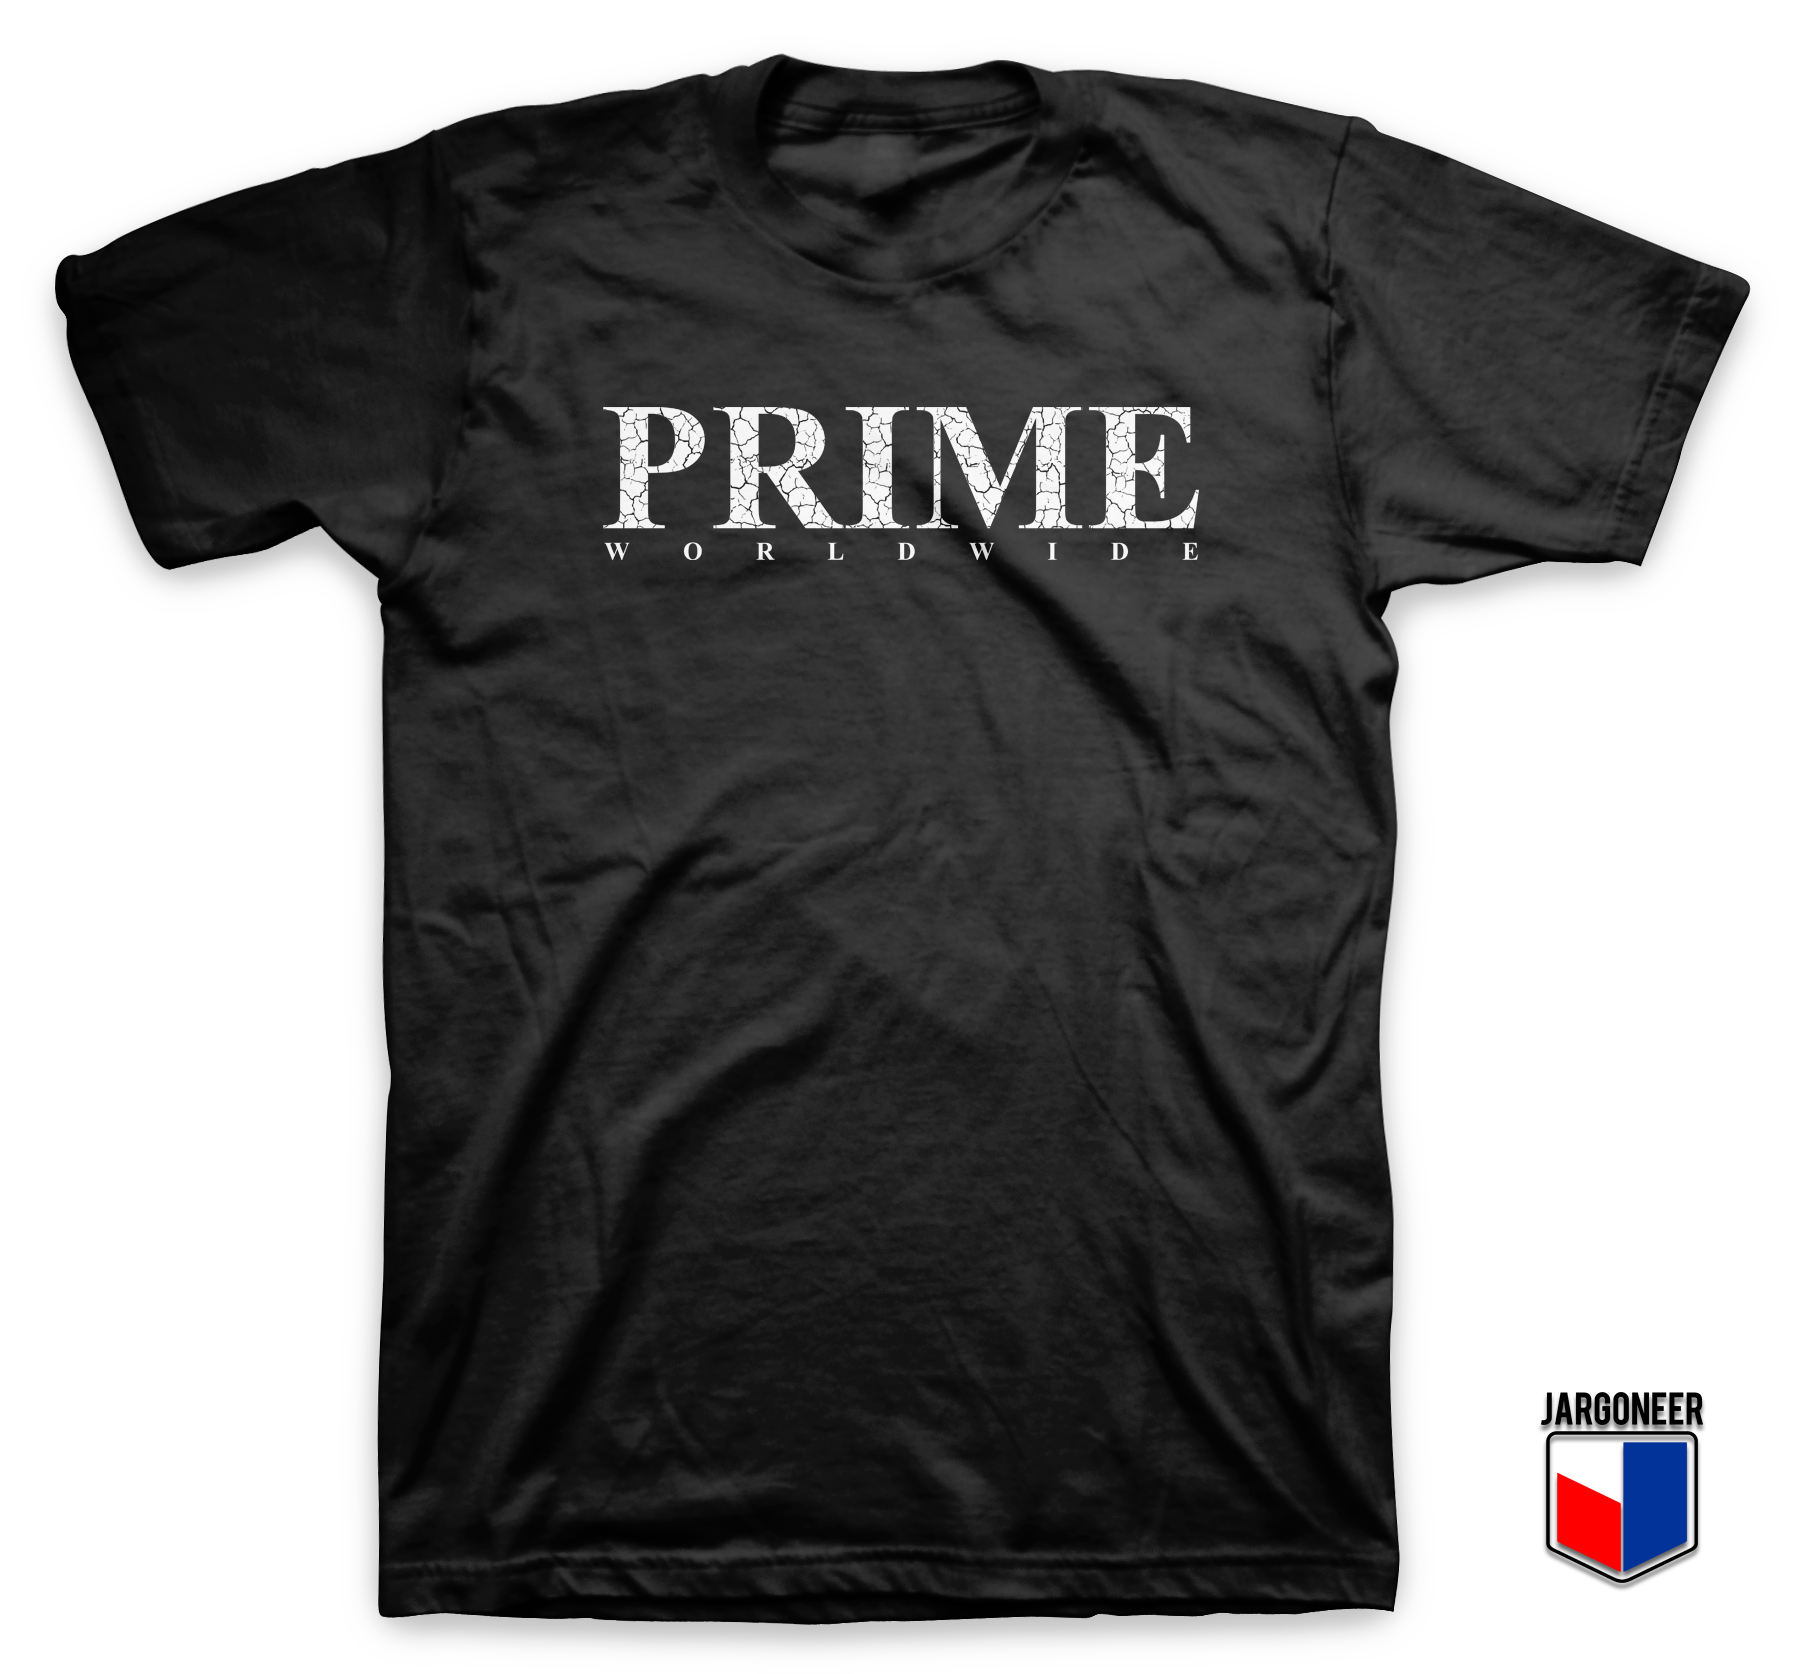 Cool Prime Worldwide T Shirt Design - Shop Unique Graphic Cool Shirt Designs